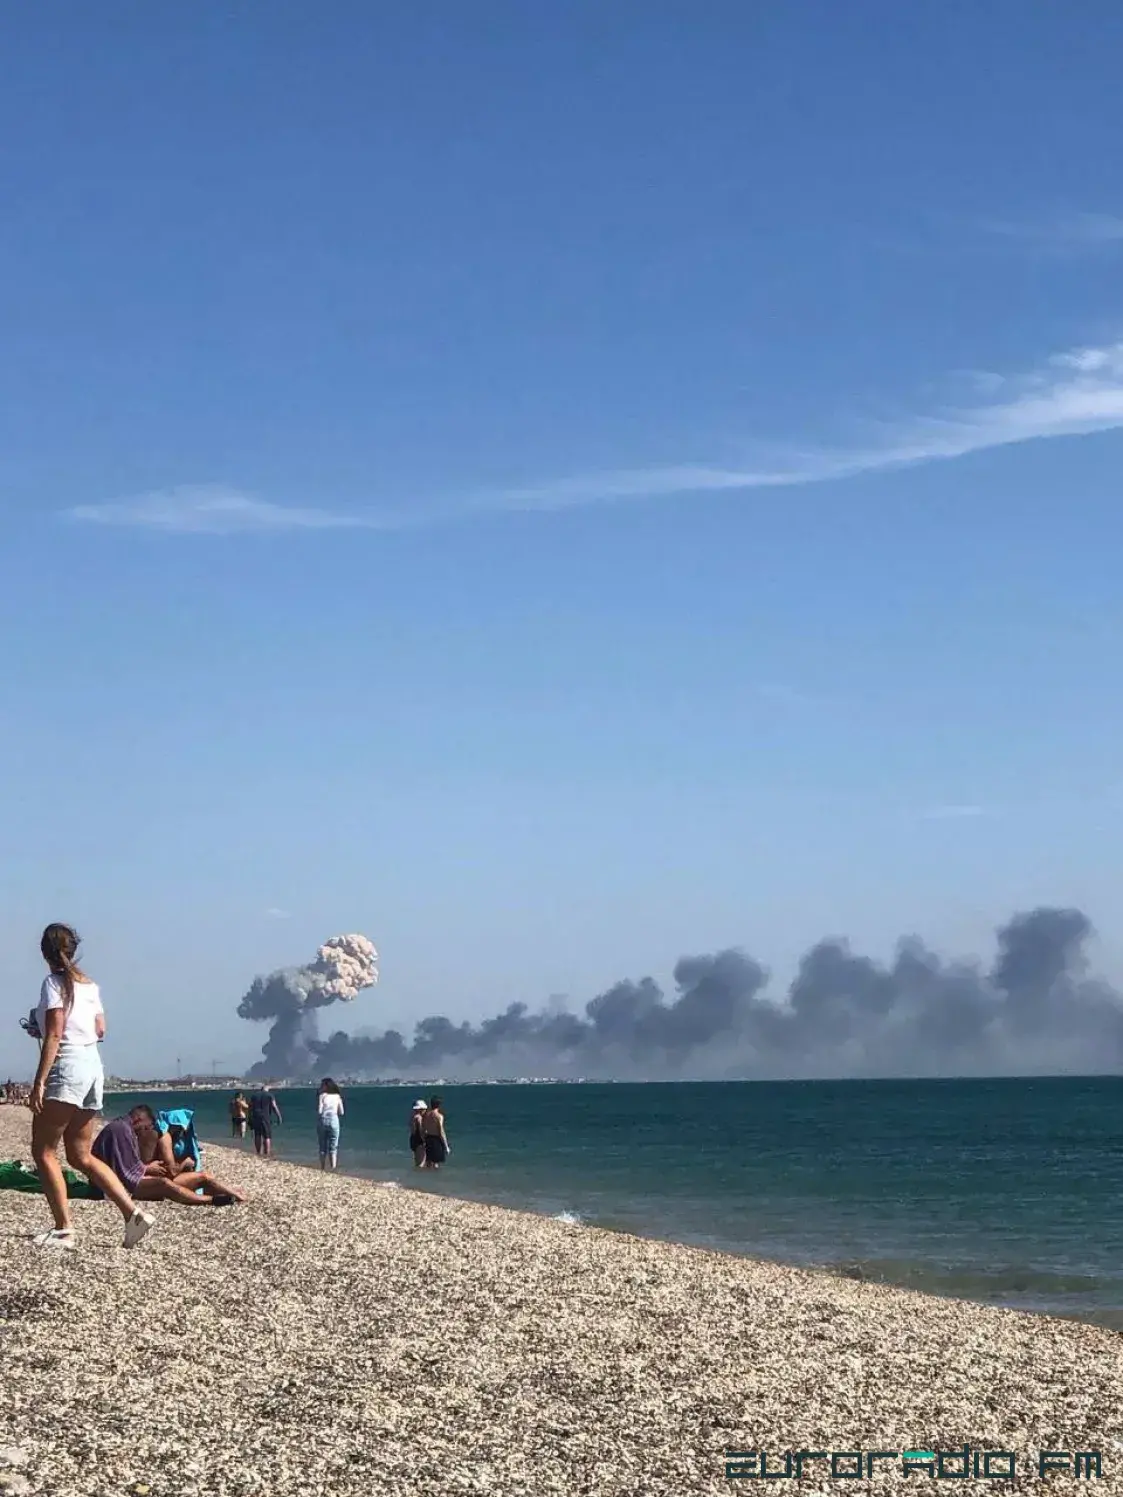 У Крыме адбылося некалькі выбухаў каля вайсковага аэрадрома Навафёдараўка